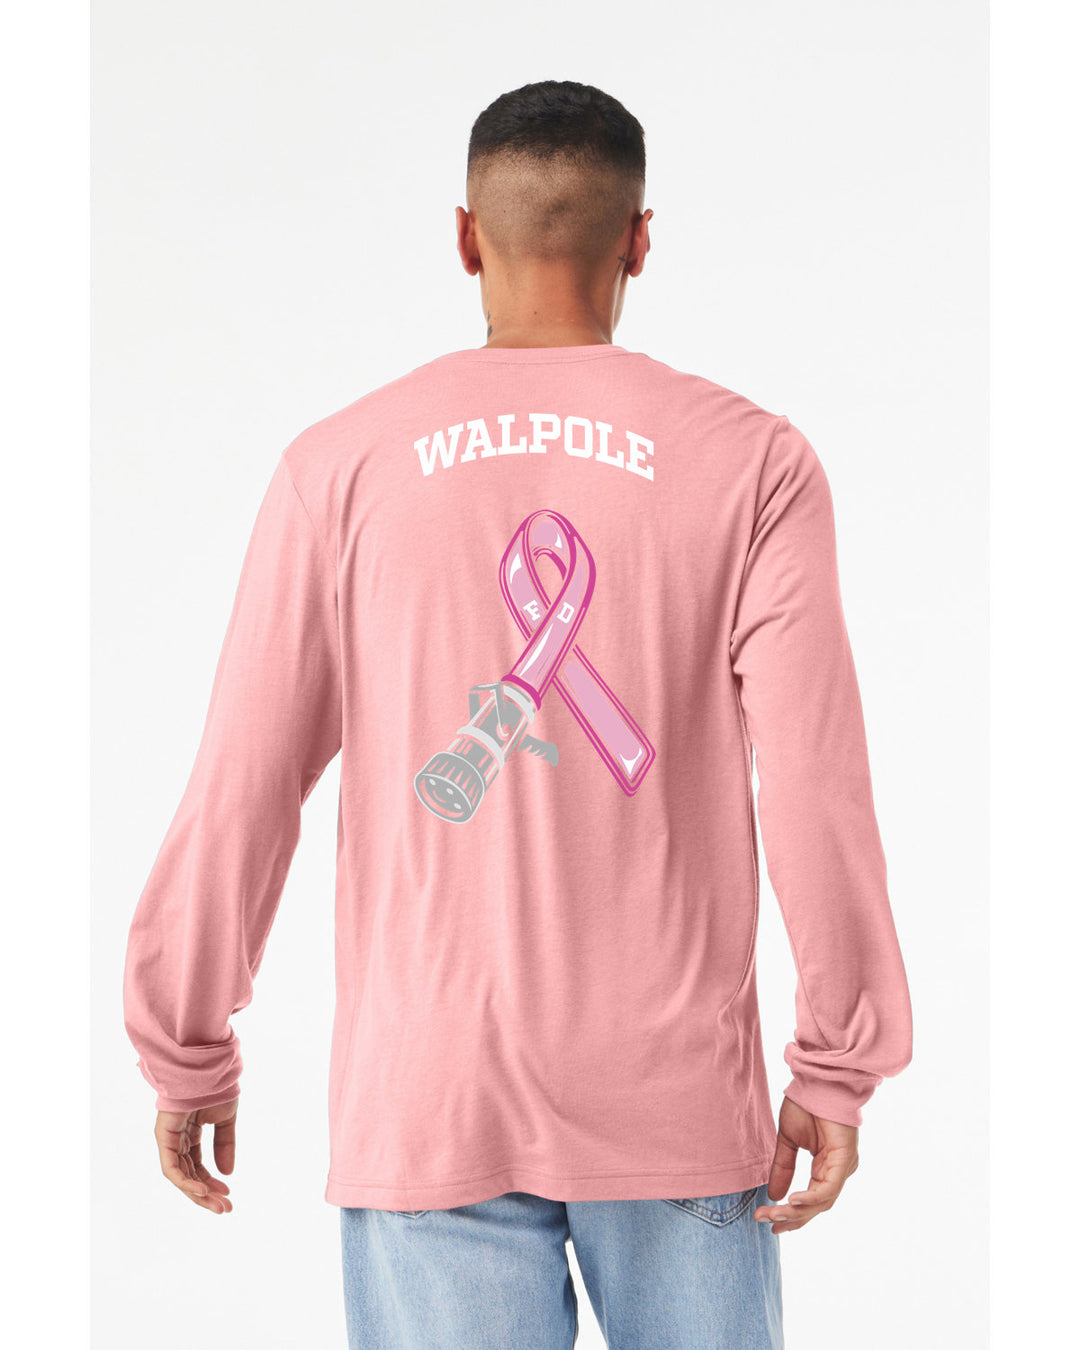 Walpole FD Breast Cancer Awareness Unisex Jersey Long-Sleeve T-Shirt (3501)